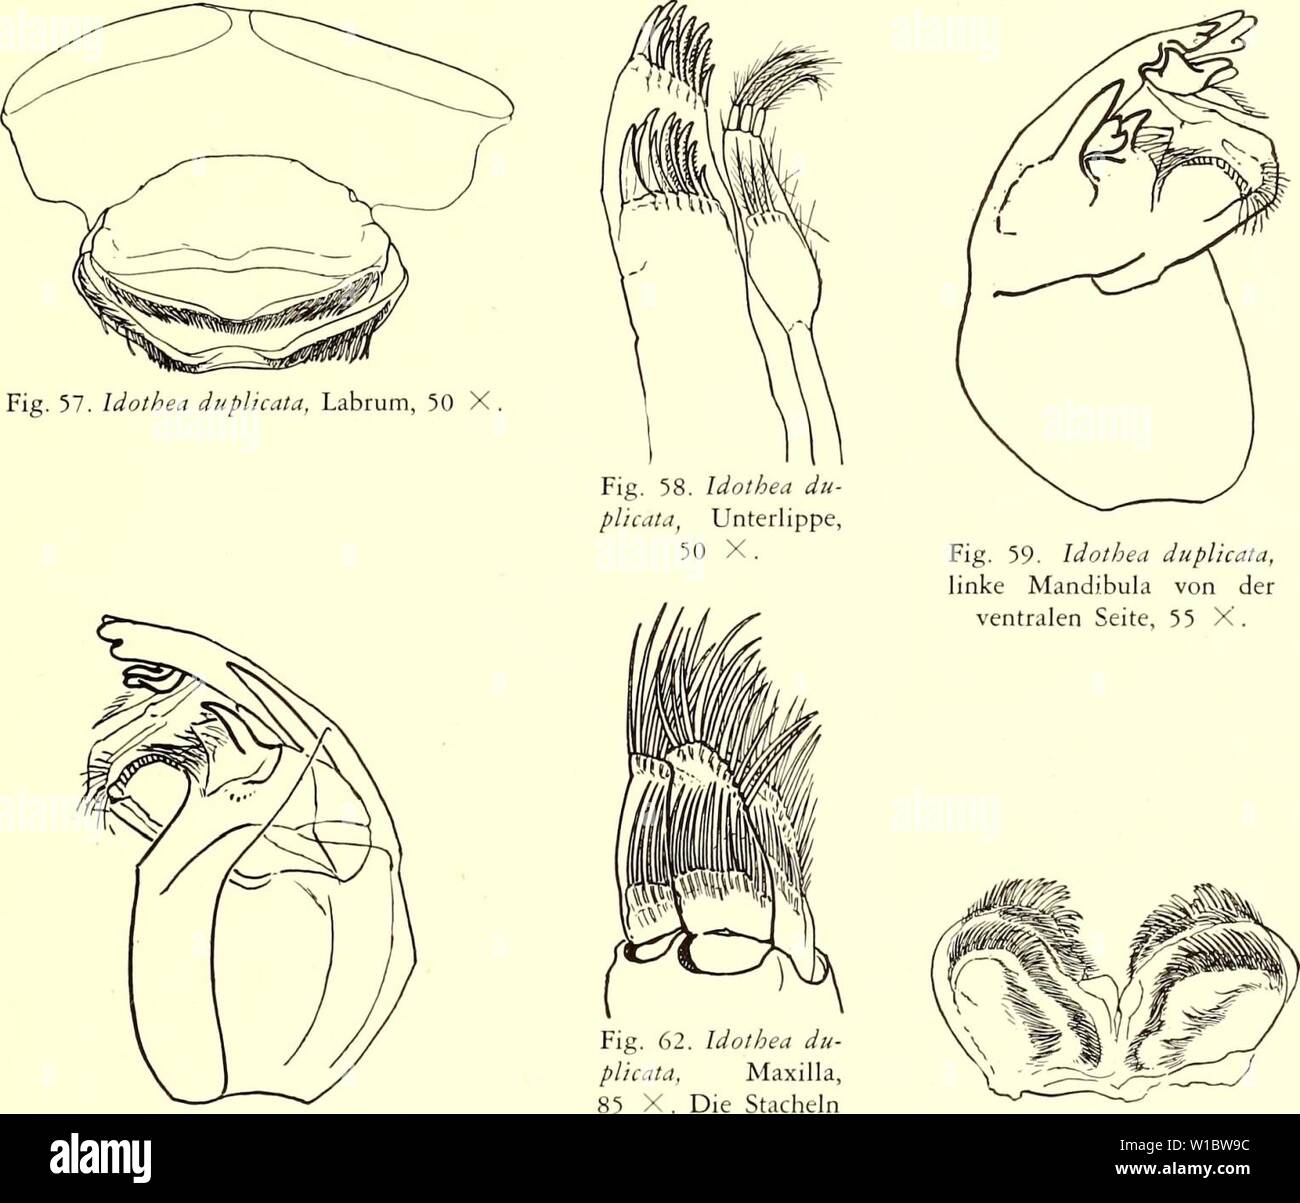 Archive image from page 46 of Die Isopoden der Siboga-Expedition (1913). Die Isopoden der Siboga-Expedition . dieisopodendersi04nier Year: 1913  VALVIFERA 271 Haare, u.s.w. Bei durchfallendem Licht sieht man alle diesen (Fig. 59); bei schiefer Lichteinstellung ergibt sich aber, dass ein Teil dorsal (Fig. 59) und ein Teil ventral (Fig. 60) liegt. In verschiedenen Hinsichten ähnelt der Bau dem von Cleantis japonica (cf. S. 263). Maxillula (Fig. 61). Articulus tertius mit etwa 10 terminalen Stacheln, von welchen ver-    Fig. 60. Idem von der dor- sind in Wirklichkeit Fig. 61. Idothea du plicata, Stock Photo